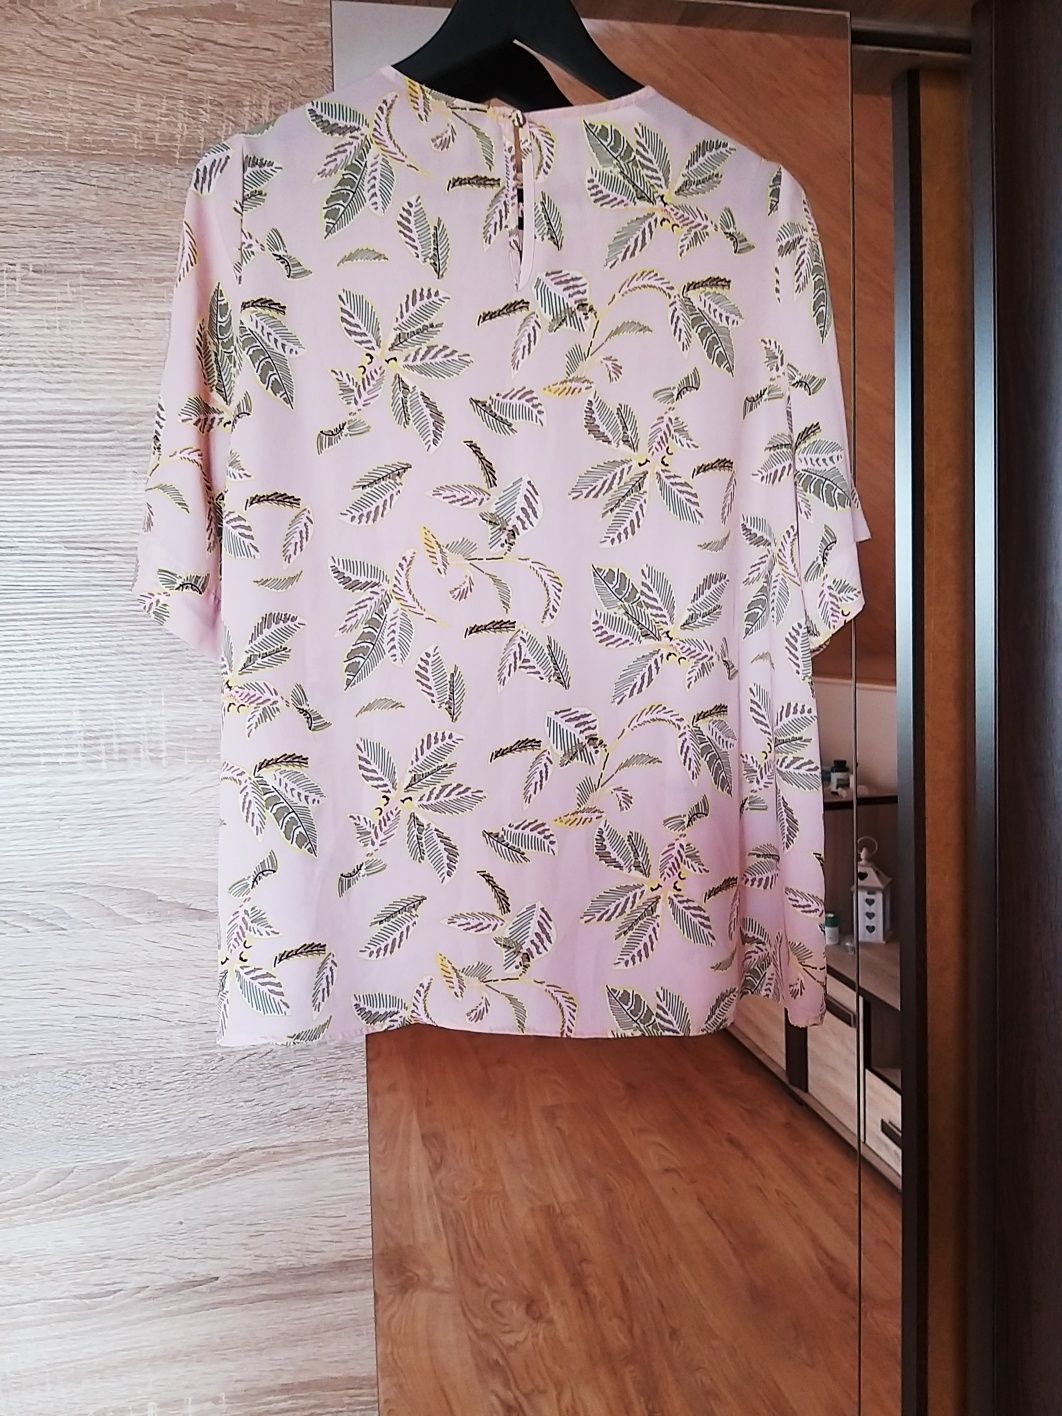 Zwiewna bluzka M&S 44 XXL rożowa róż palmy boho etno koszulka rękaw